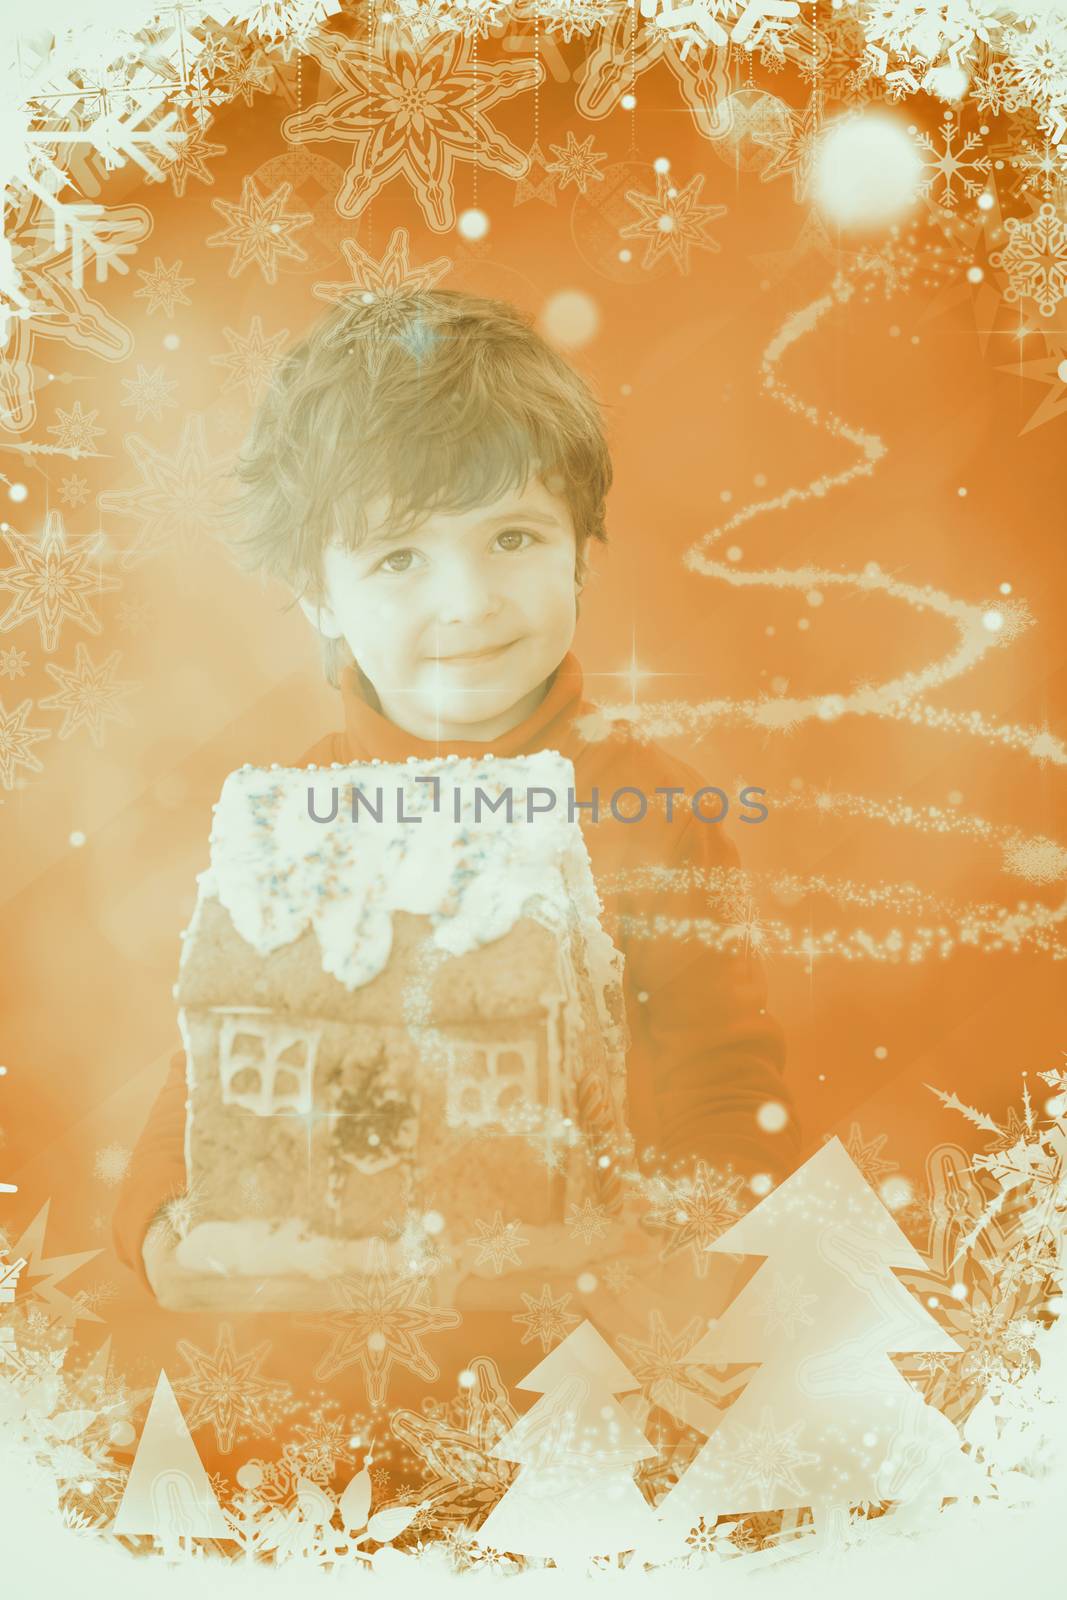 Festive little boy holding gingerbread house against glittering christmas tree design